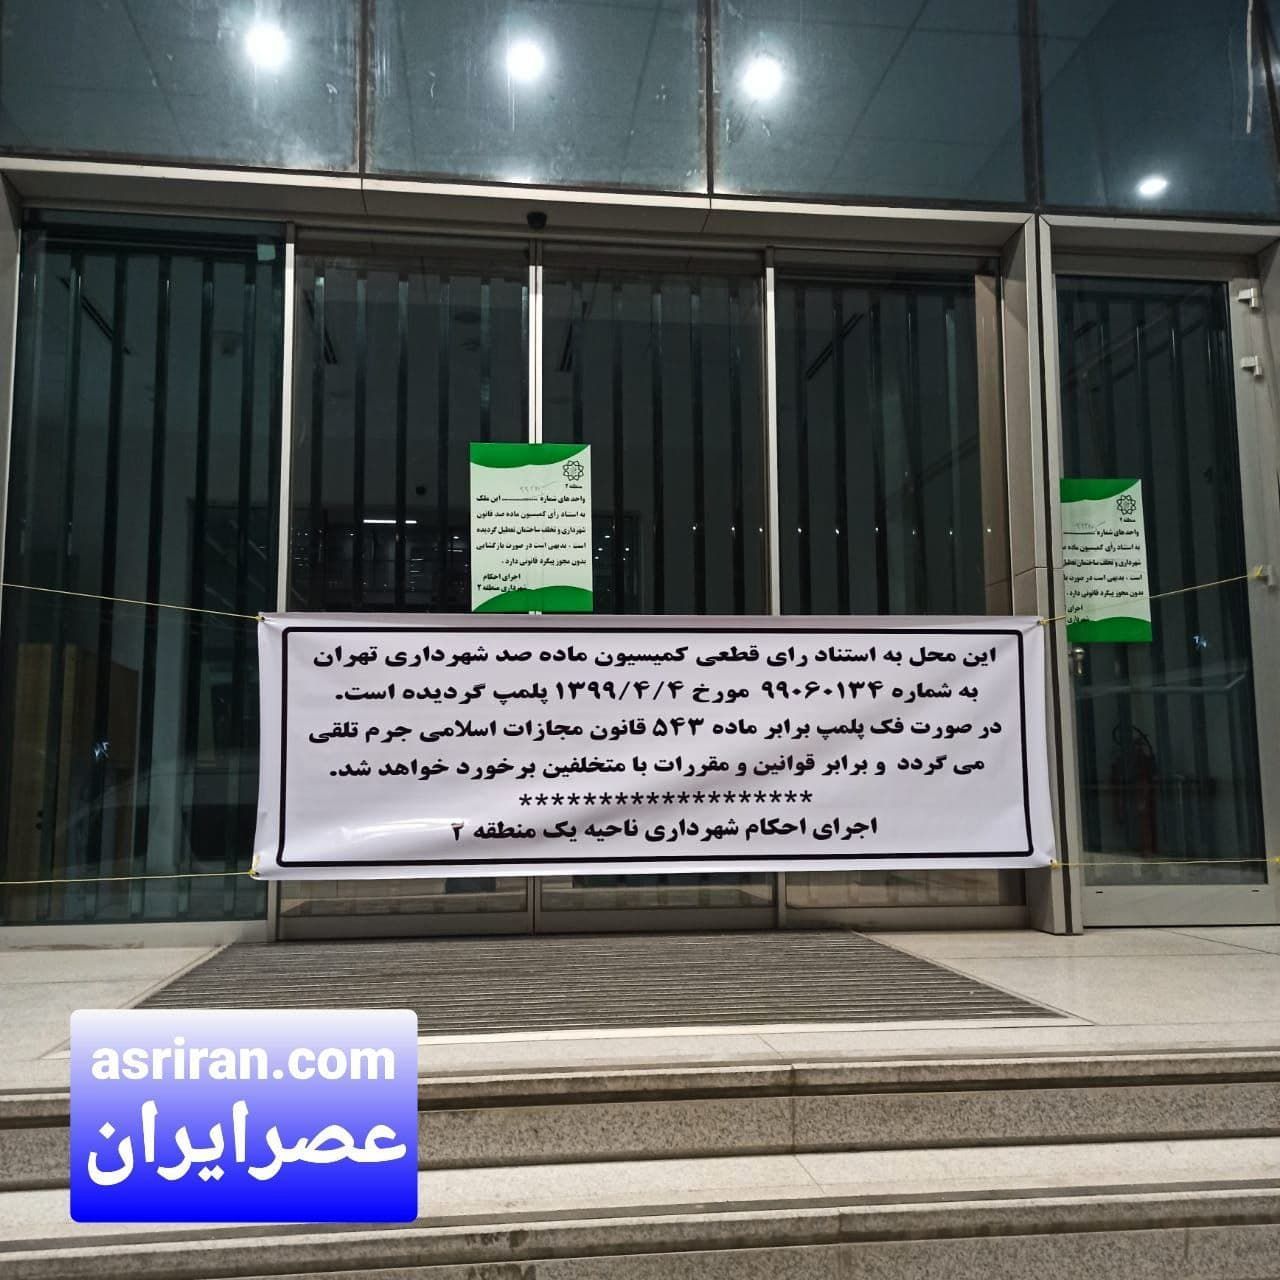 شهرداری بورس تهران را پلمپ کرد! + عکس